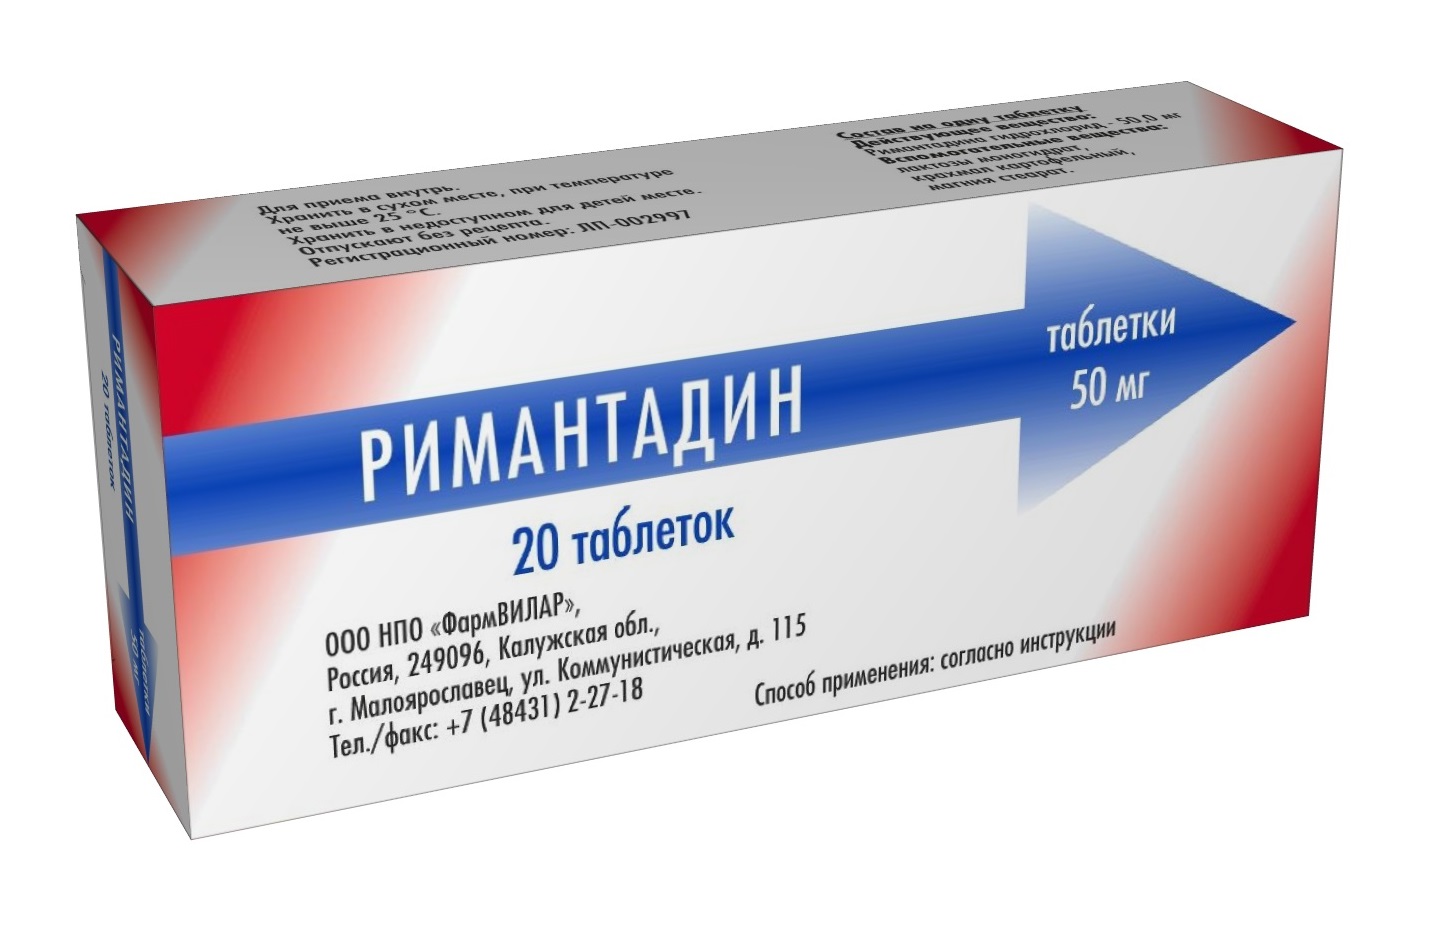 ФармВИЛАР римантадин фармвилар 50 мг 20 табл